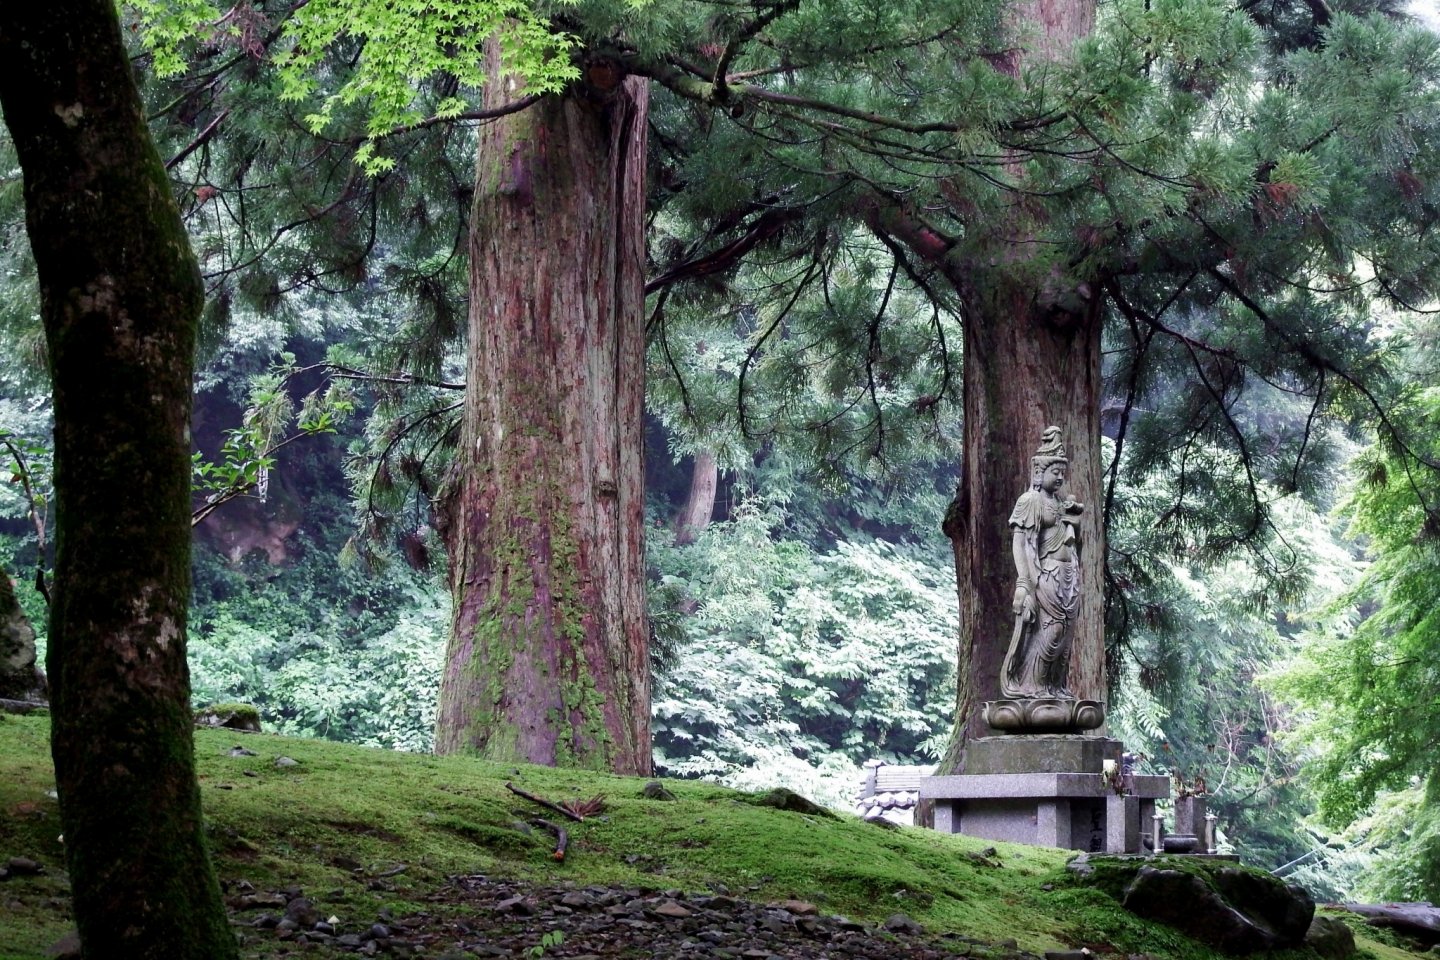 永平寺通用門へと続く参道沿いには、緑の森の中、観音像が静かに佇んでいる